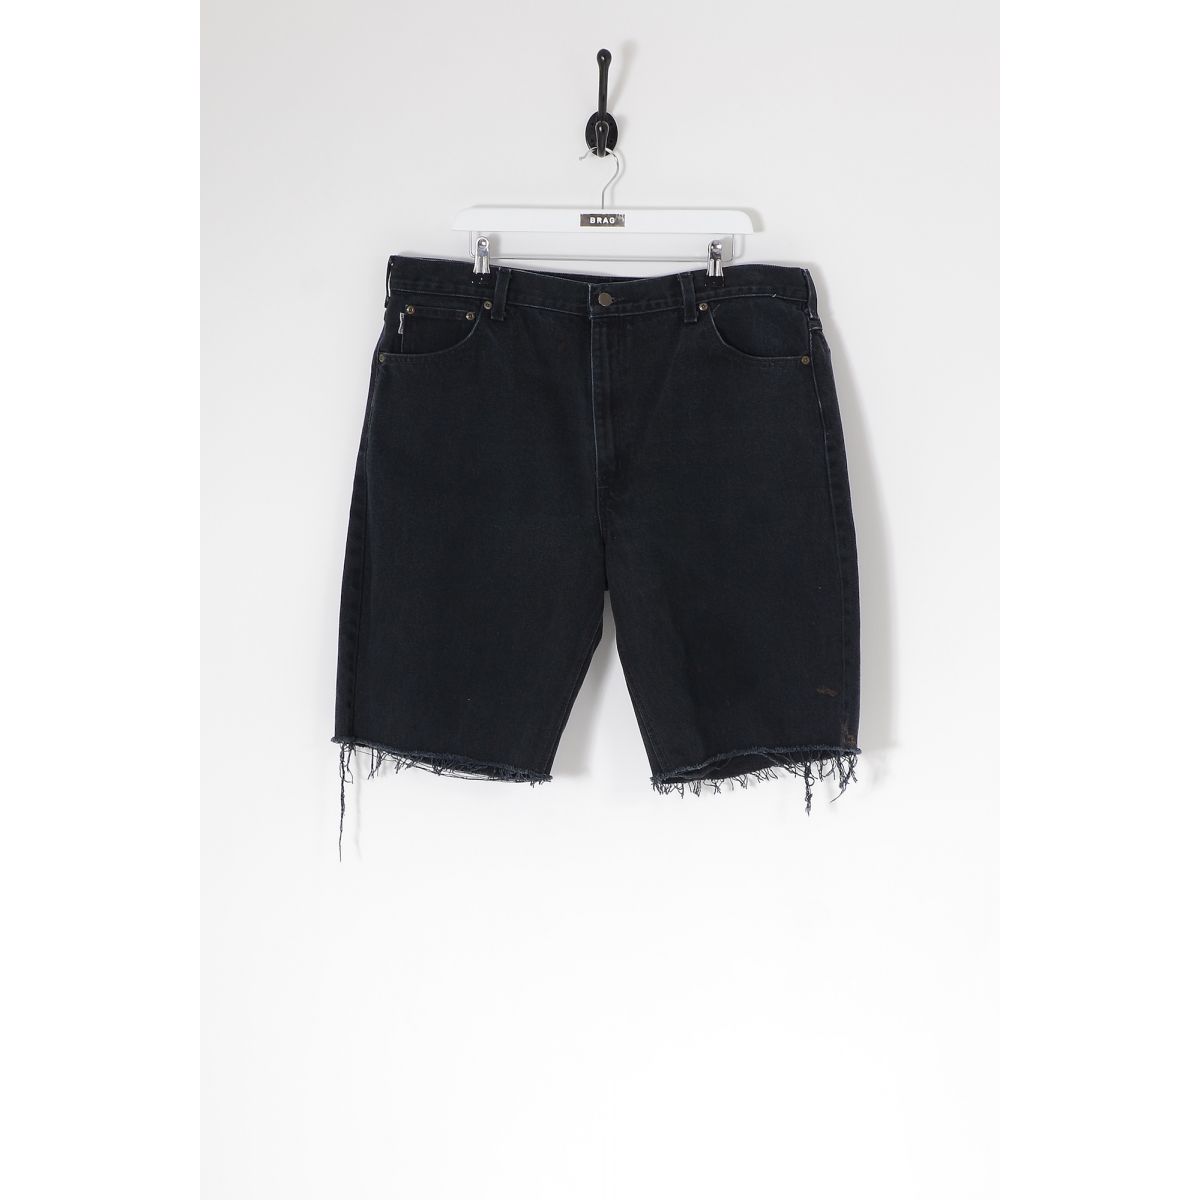 Vintage CARHARTT Cut Off Denim Shorts Black W40